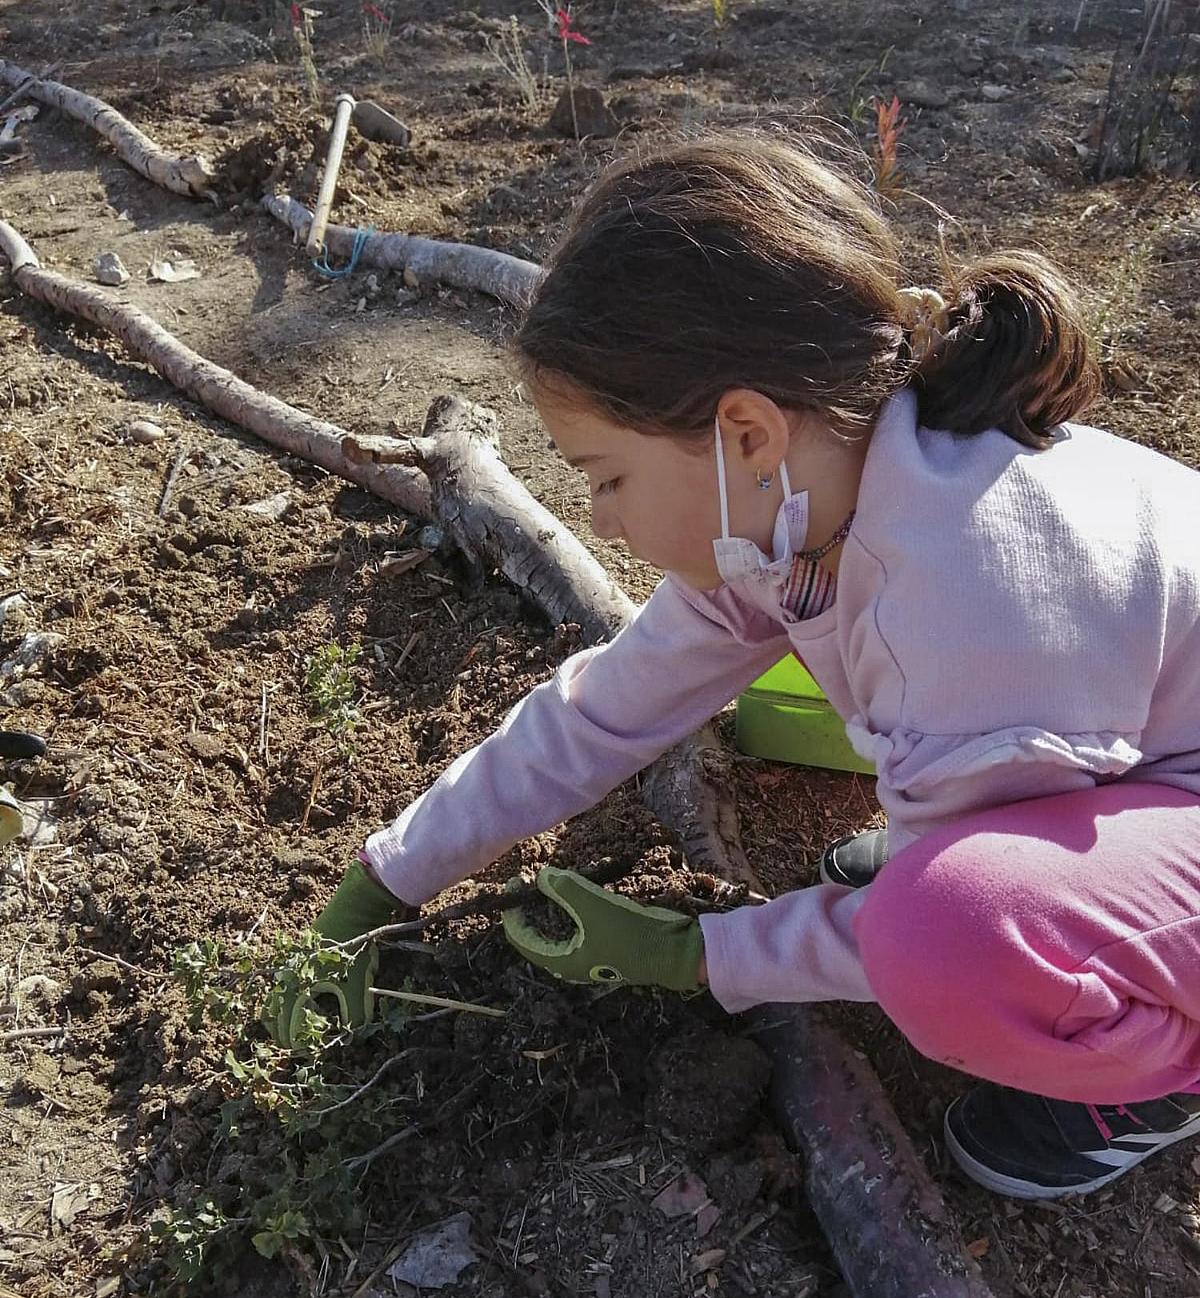 Un proyecto vecinal en Getafe convierte una escombrera en un mini bosque rodeado de encinas